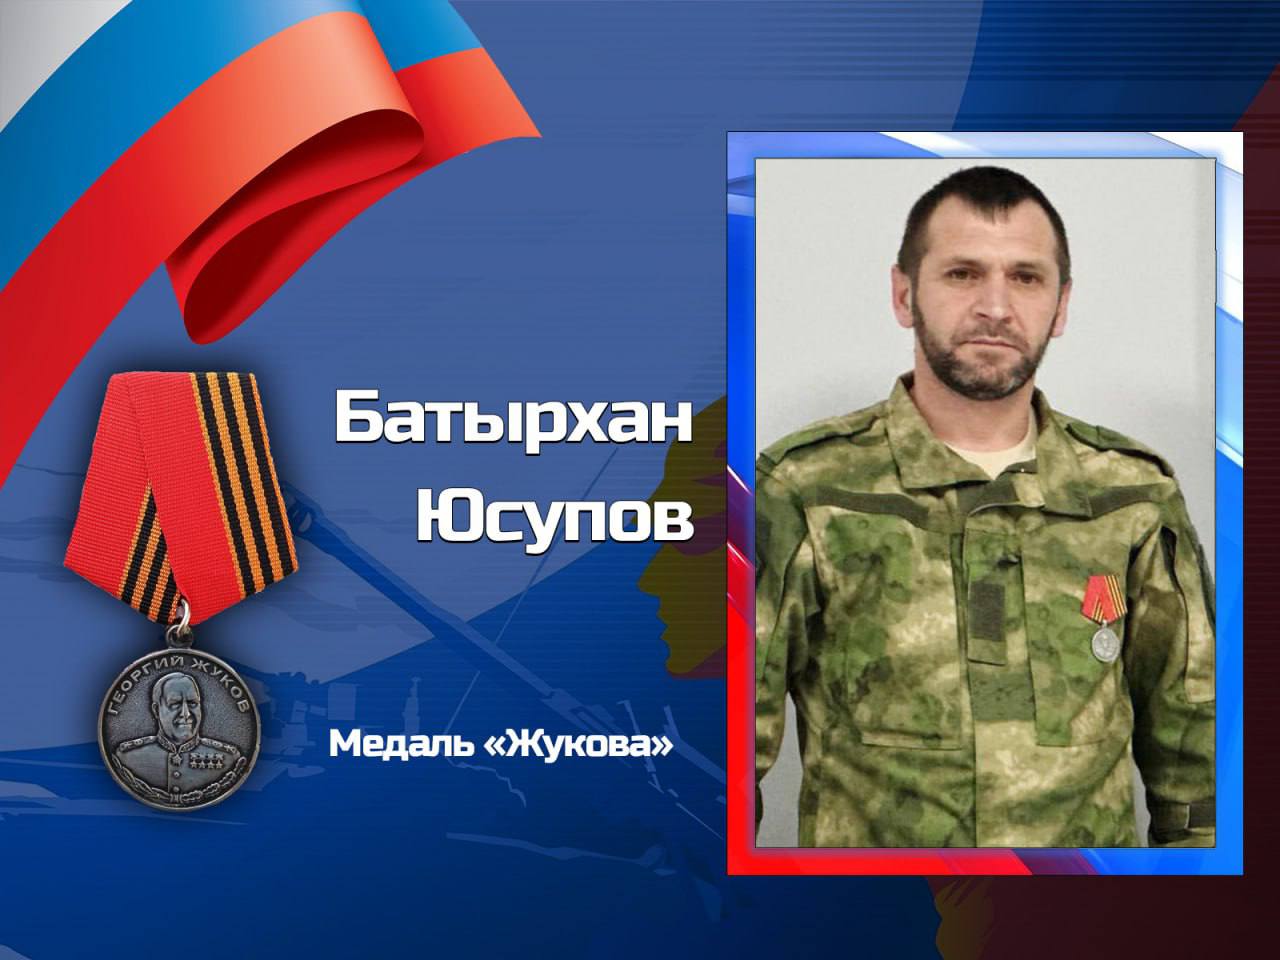 Участник СВО из города Хасавюрта удостоен медали Жукова за мужество и самоотверженность